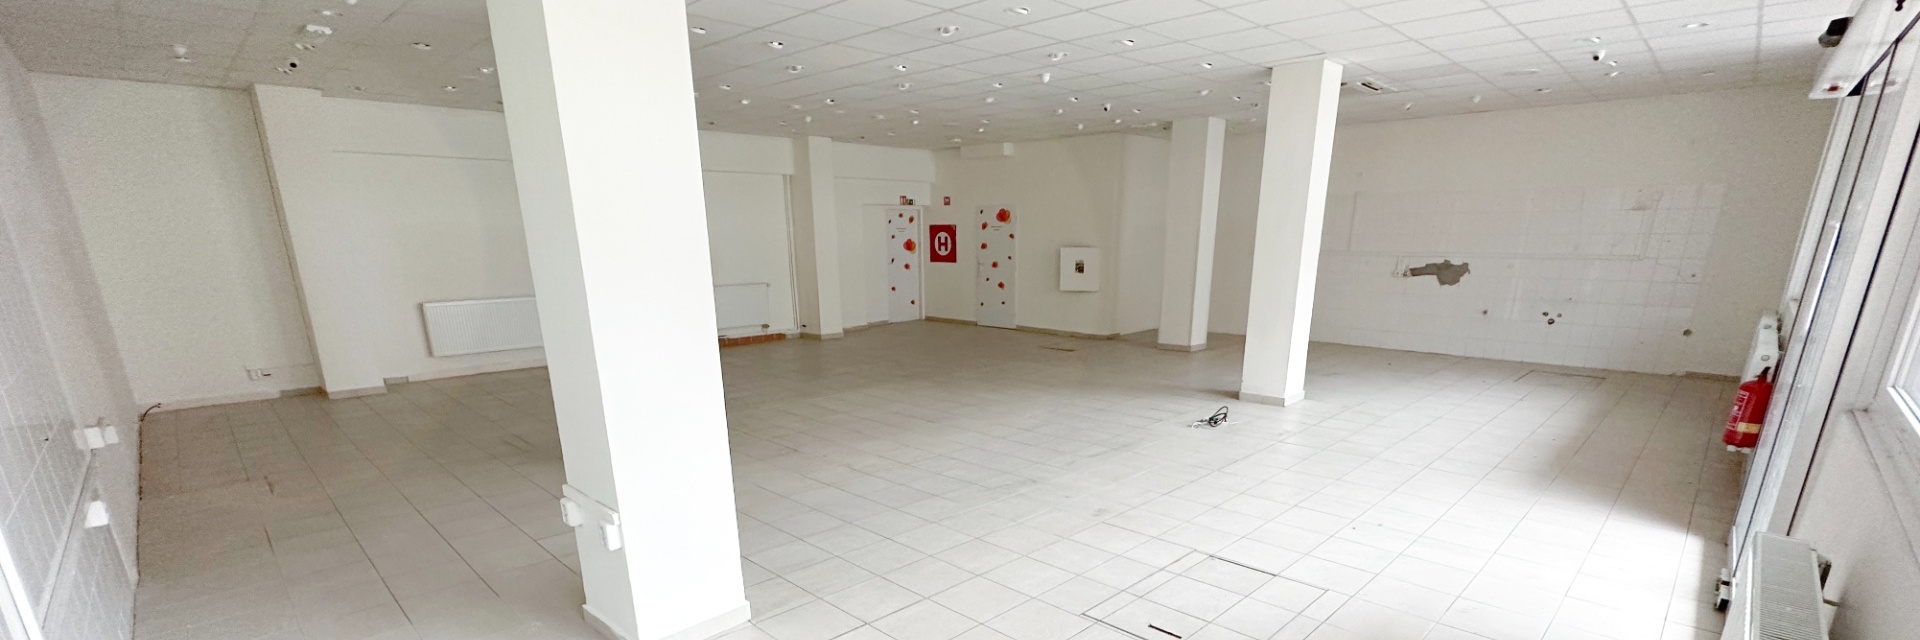 Prodej komerční jednotky 168 m² - Brno - Starý Lískovec